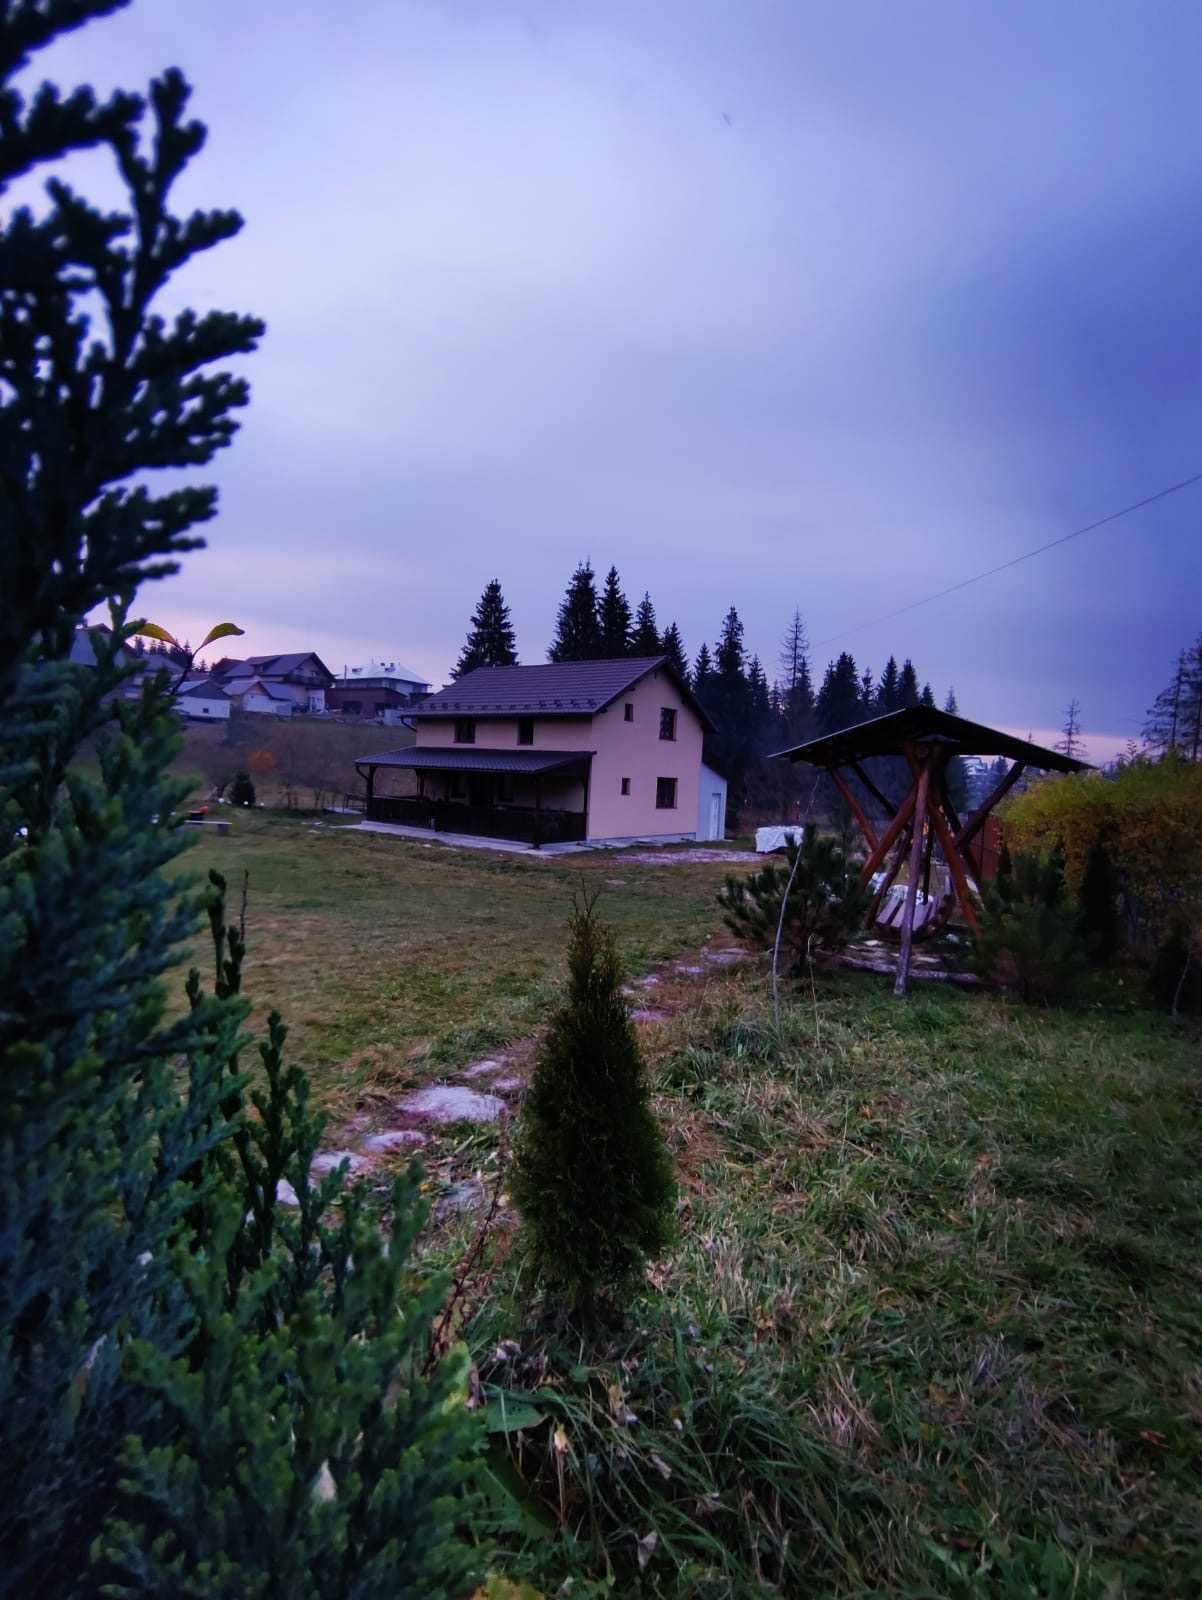 Cabana de închiriat in Belis, jud Cluj, aproape de Rasca si Marisel